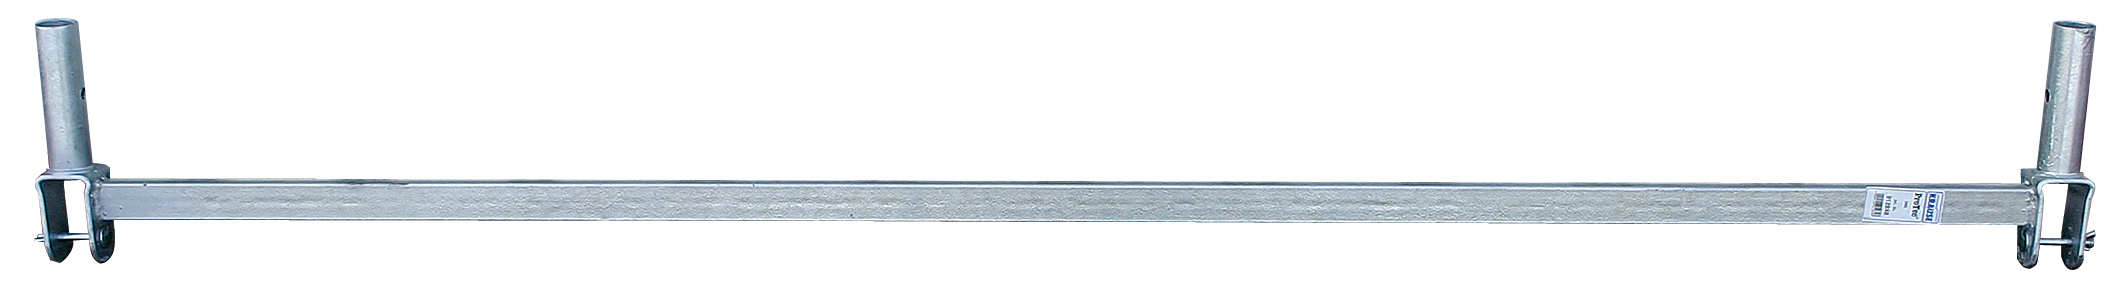 Basisstrebe Stahl, Länge 2 m, Serien 10 und 50